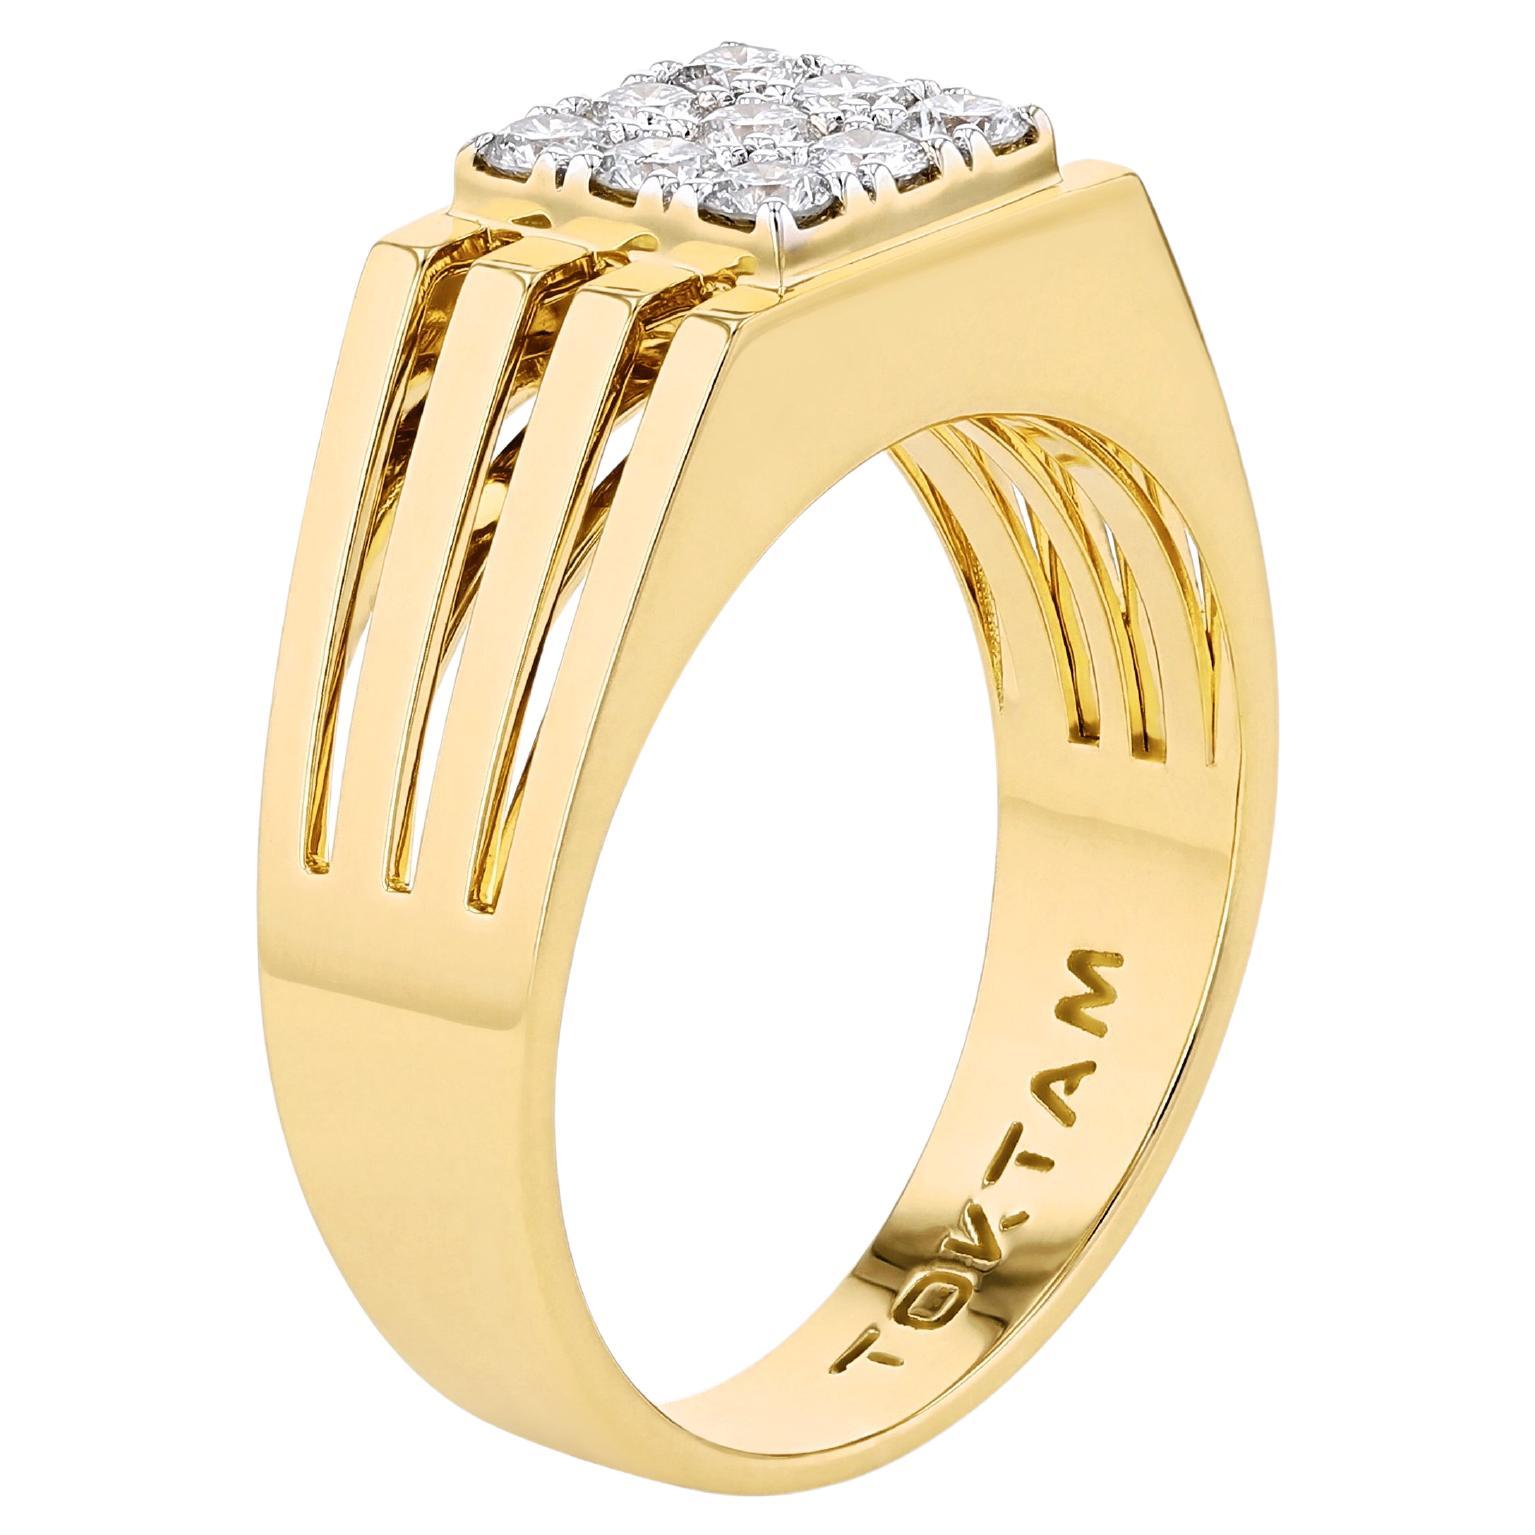 TOKTAM 18k Yellow Gold Men's Collection Diamond Signet Ring